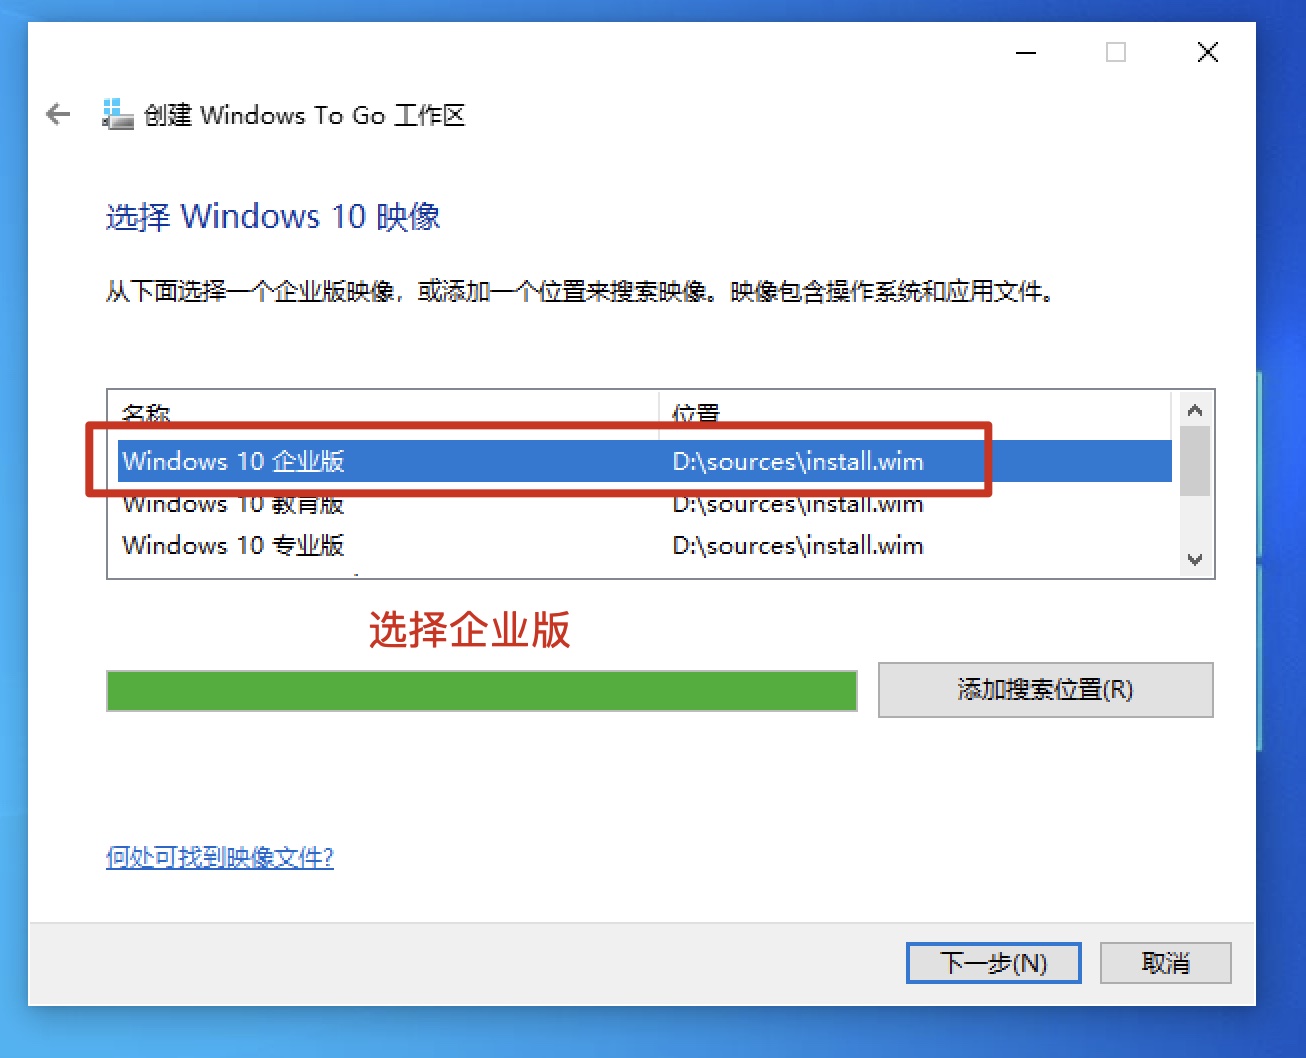 windows7声卡驱动修复，如何修复Windows 7声卡驱动问题及下载Windows 7声卡驱动修复压缩包